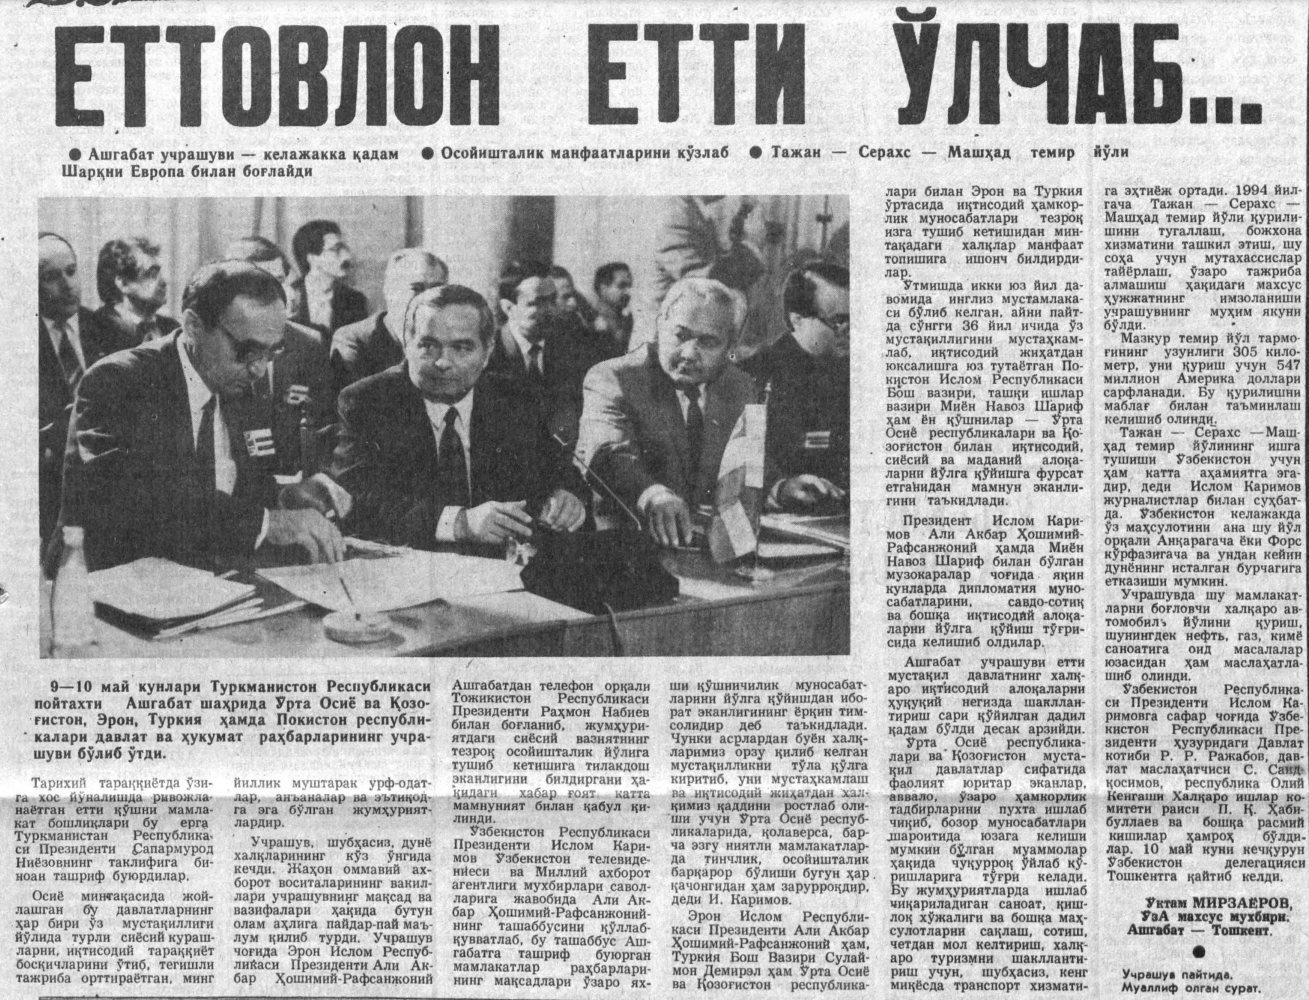 «Ўзбекистон овози» газетасининг 1992 йил 12 май сонидан лавҳа